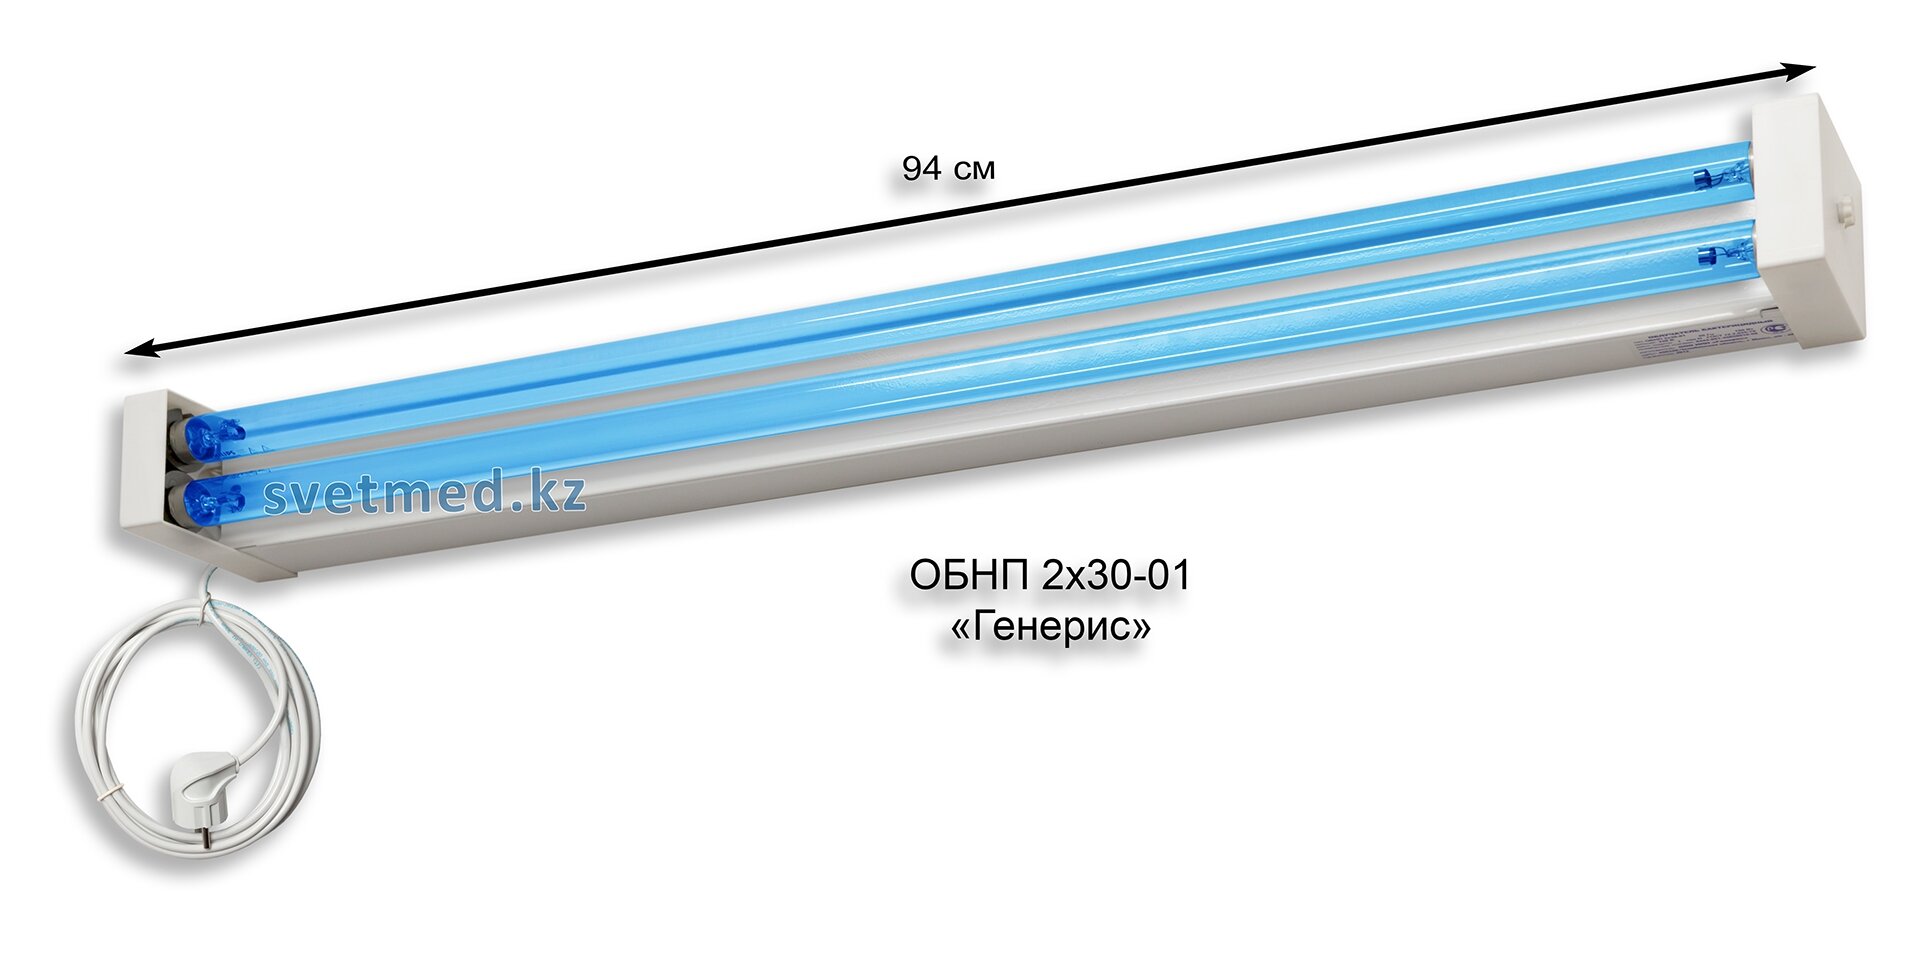 Облучатель бактерицидный настенный ОБНП 2х30-01 Генерис.jpg